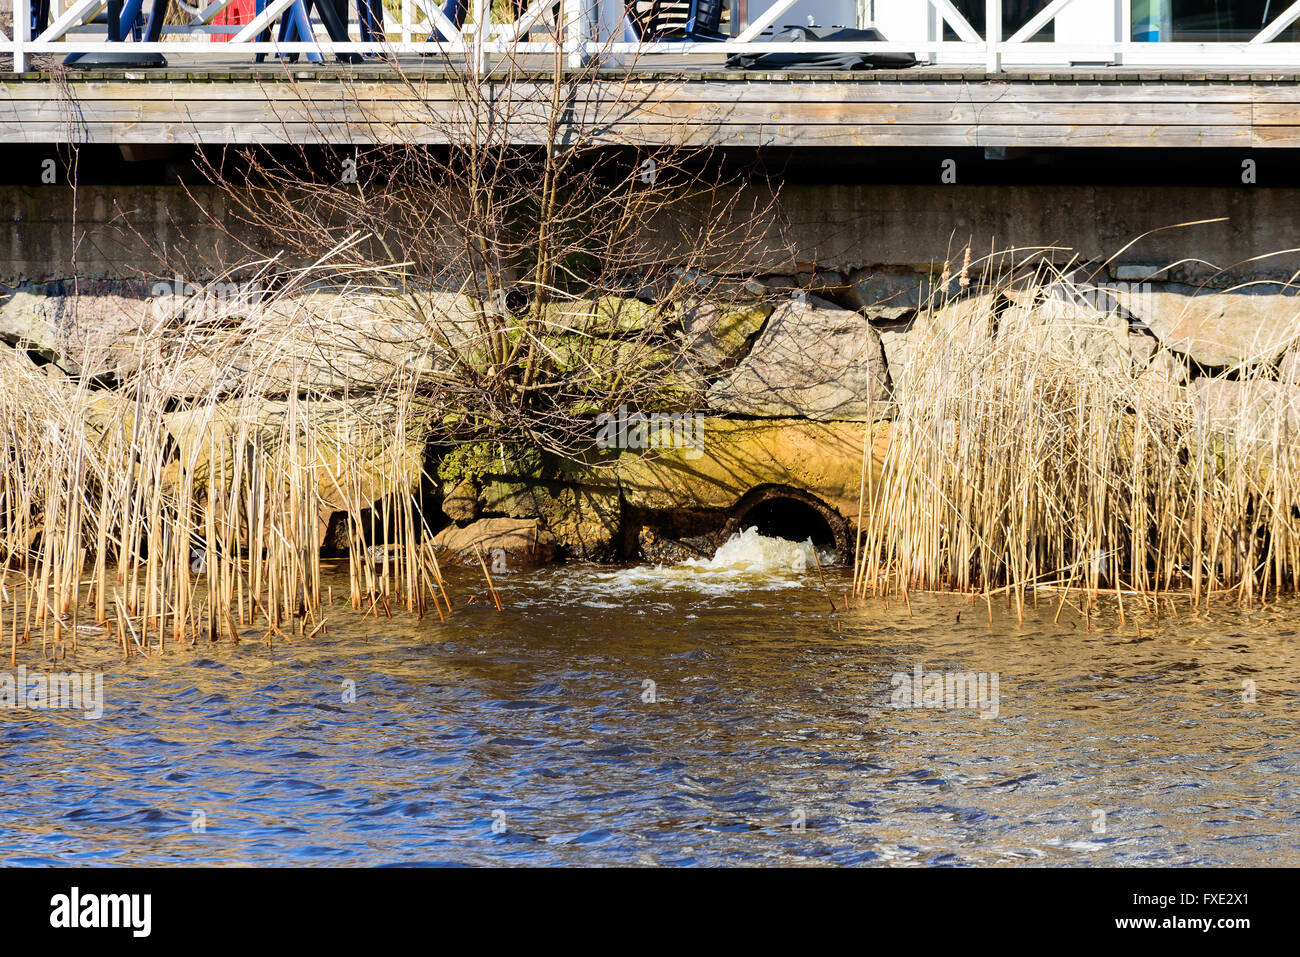 Salida de drenaje de tormentas en un río con bloques de piedra que rodea y parte de un espigón o puente por encima. Foto de stock